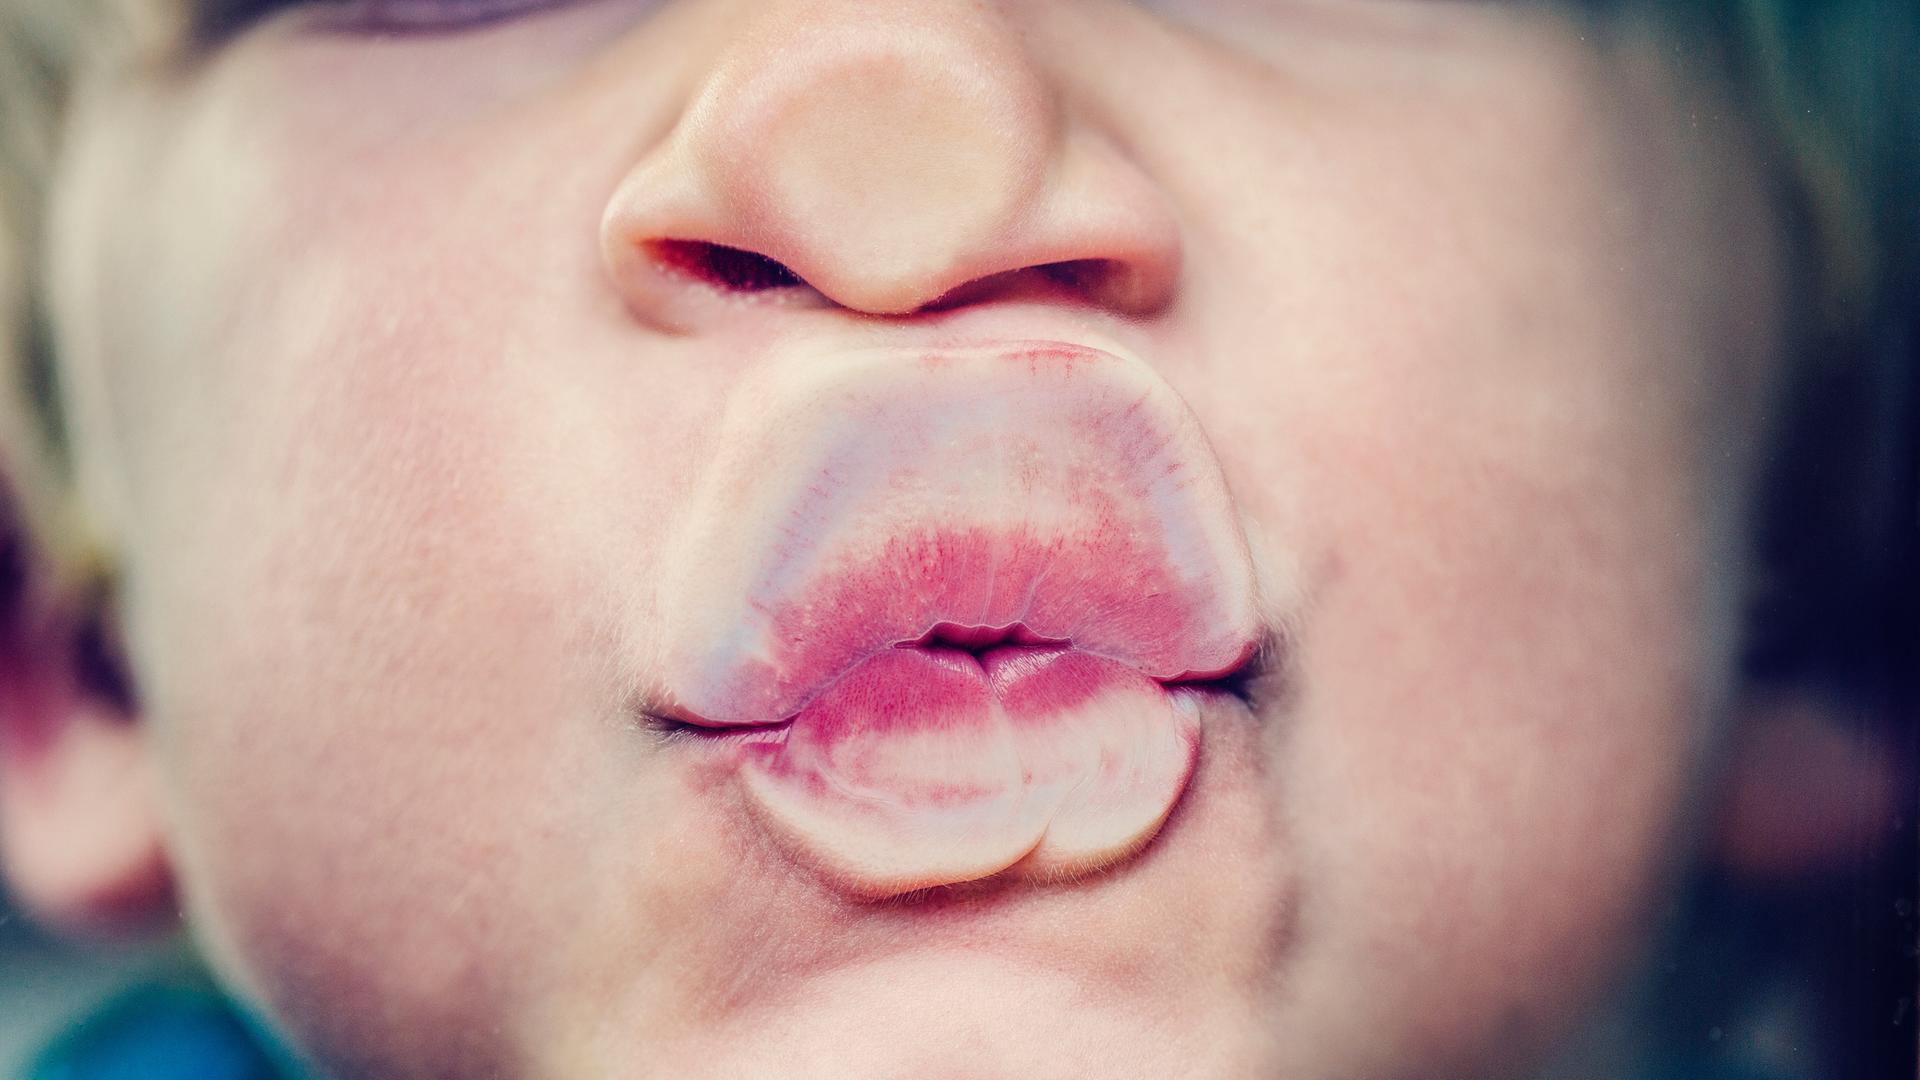 Ein Kind drückt Nase und Mund wie bei einem Kuss gegen eine Glasscheibe.